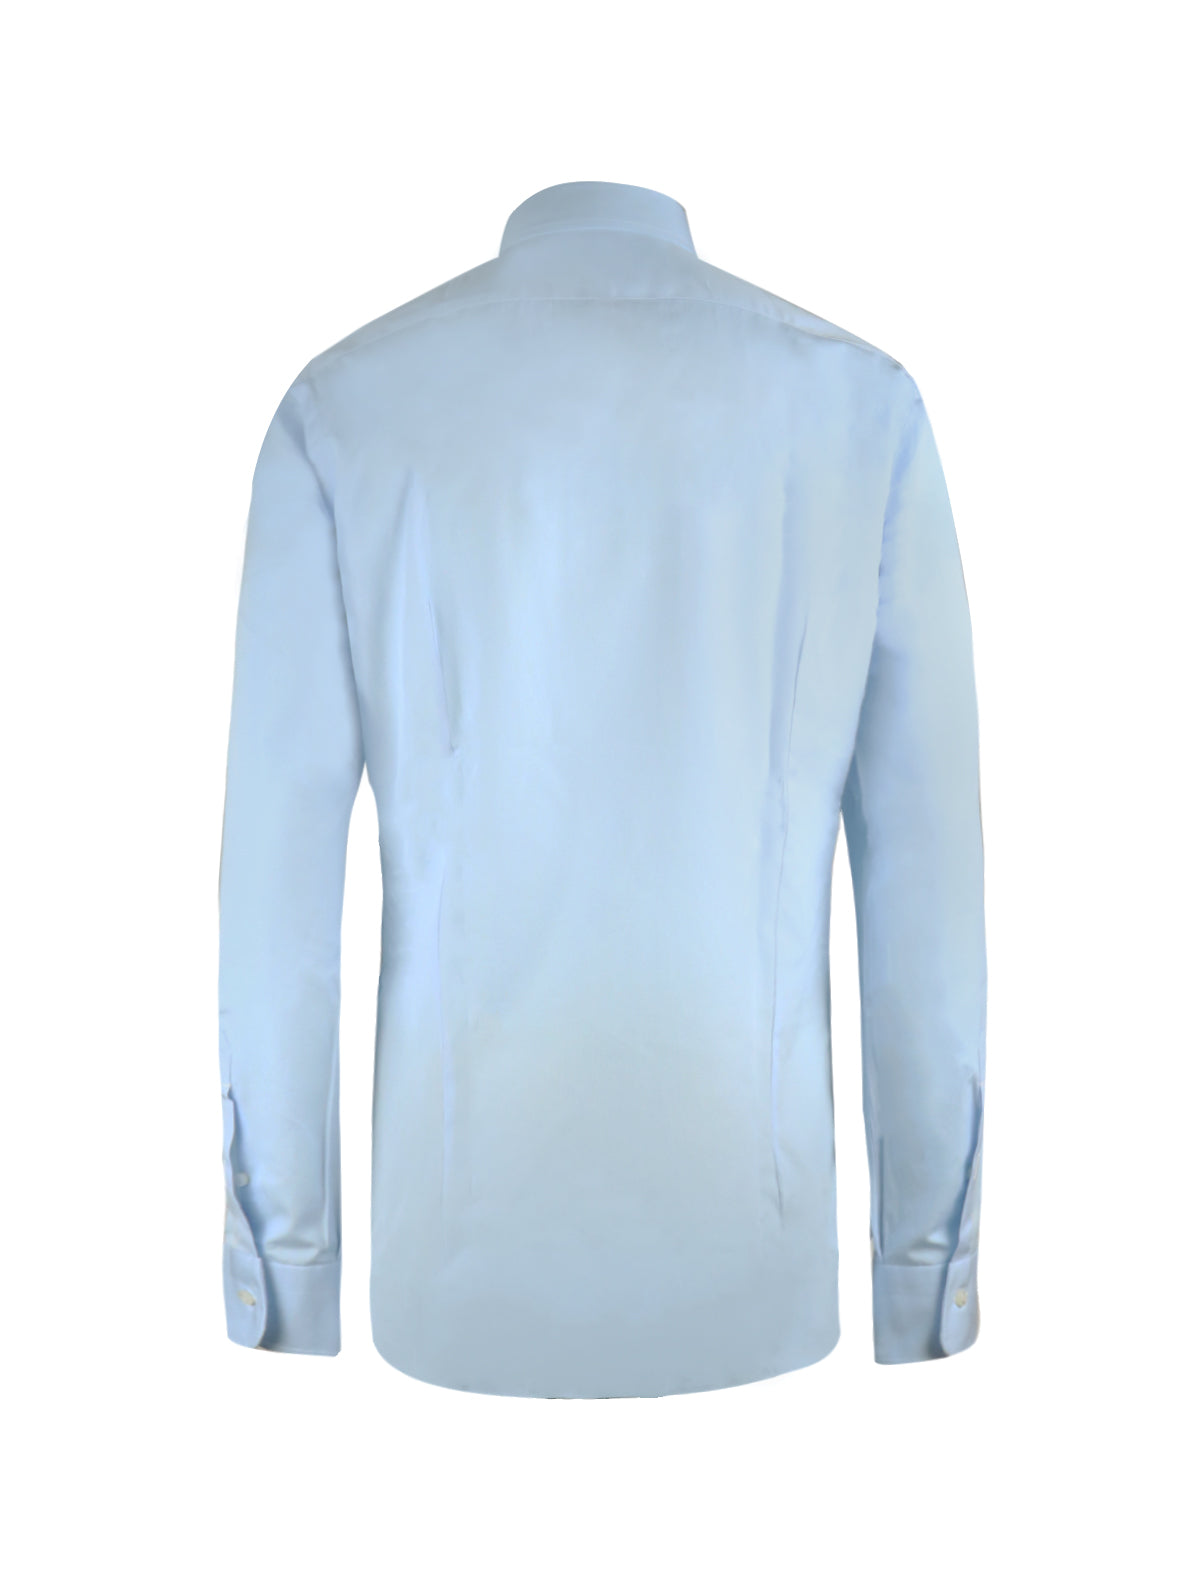 Barba Napoli Crisp Cotton Shirt in Blue